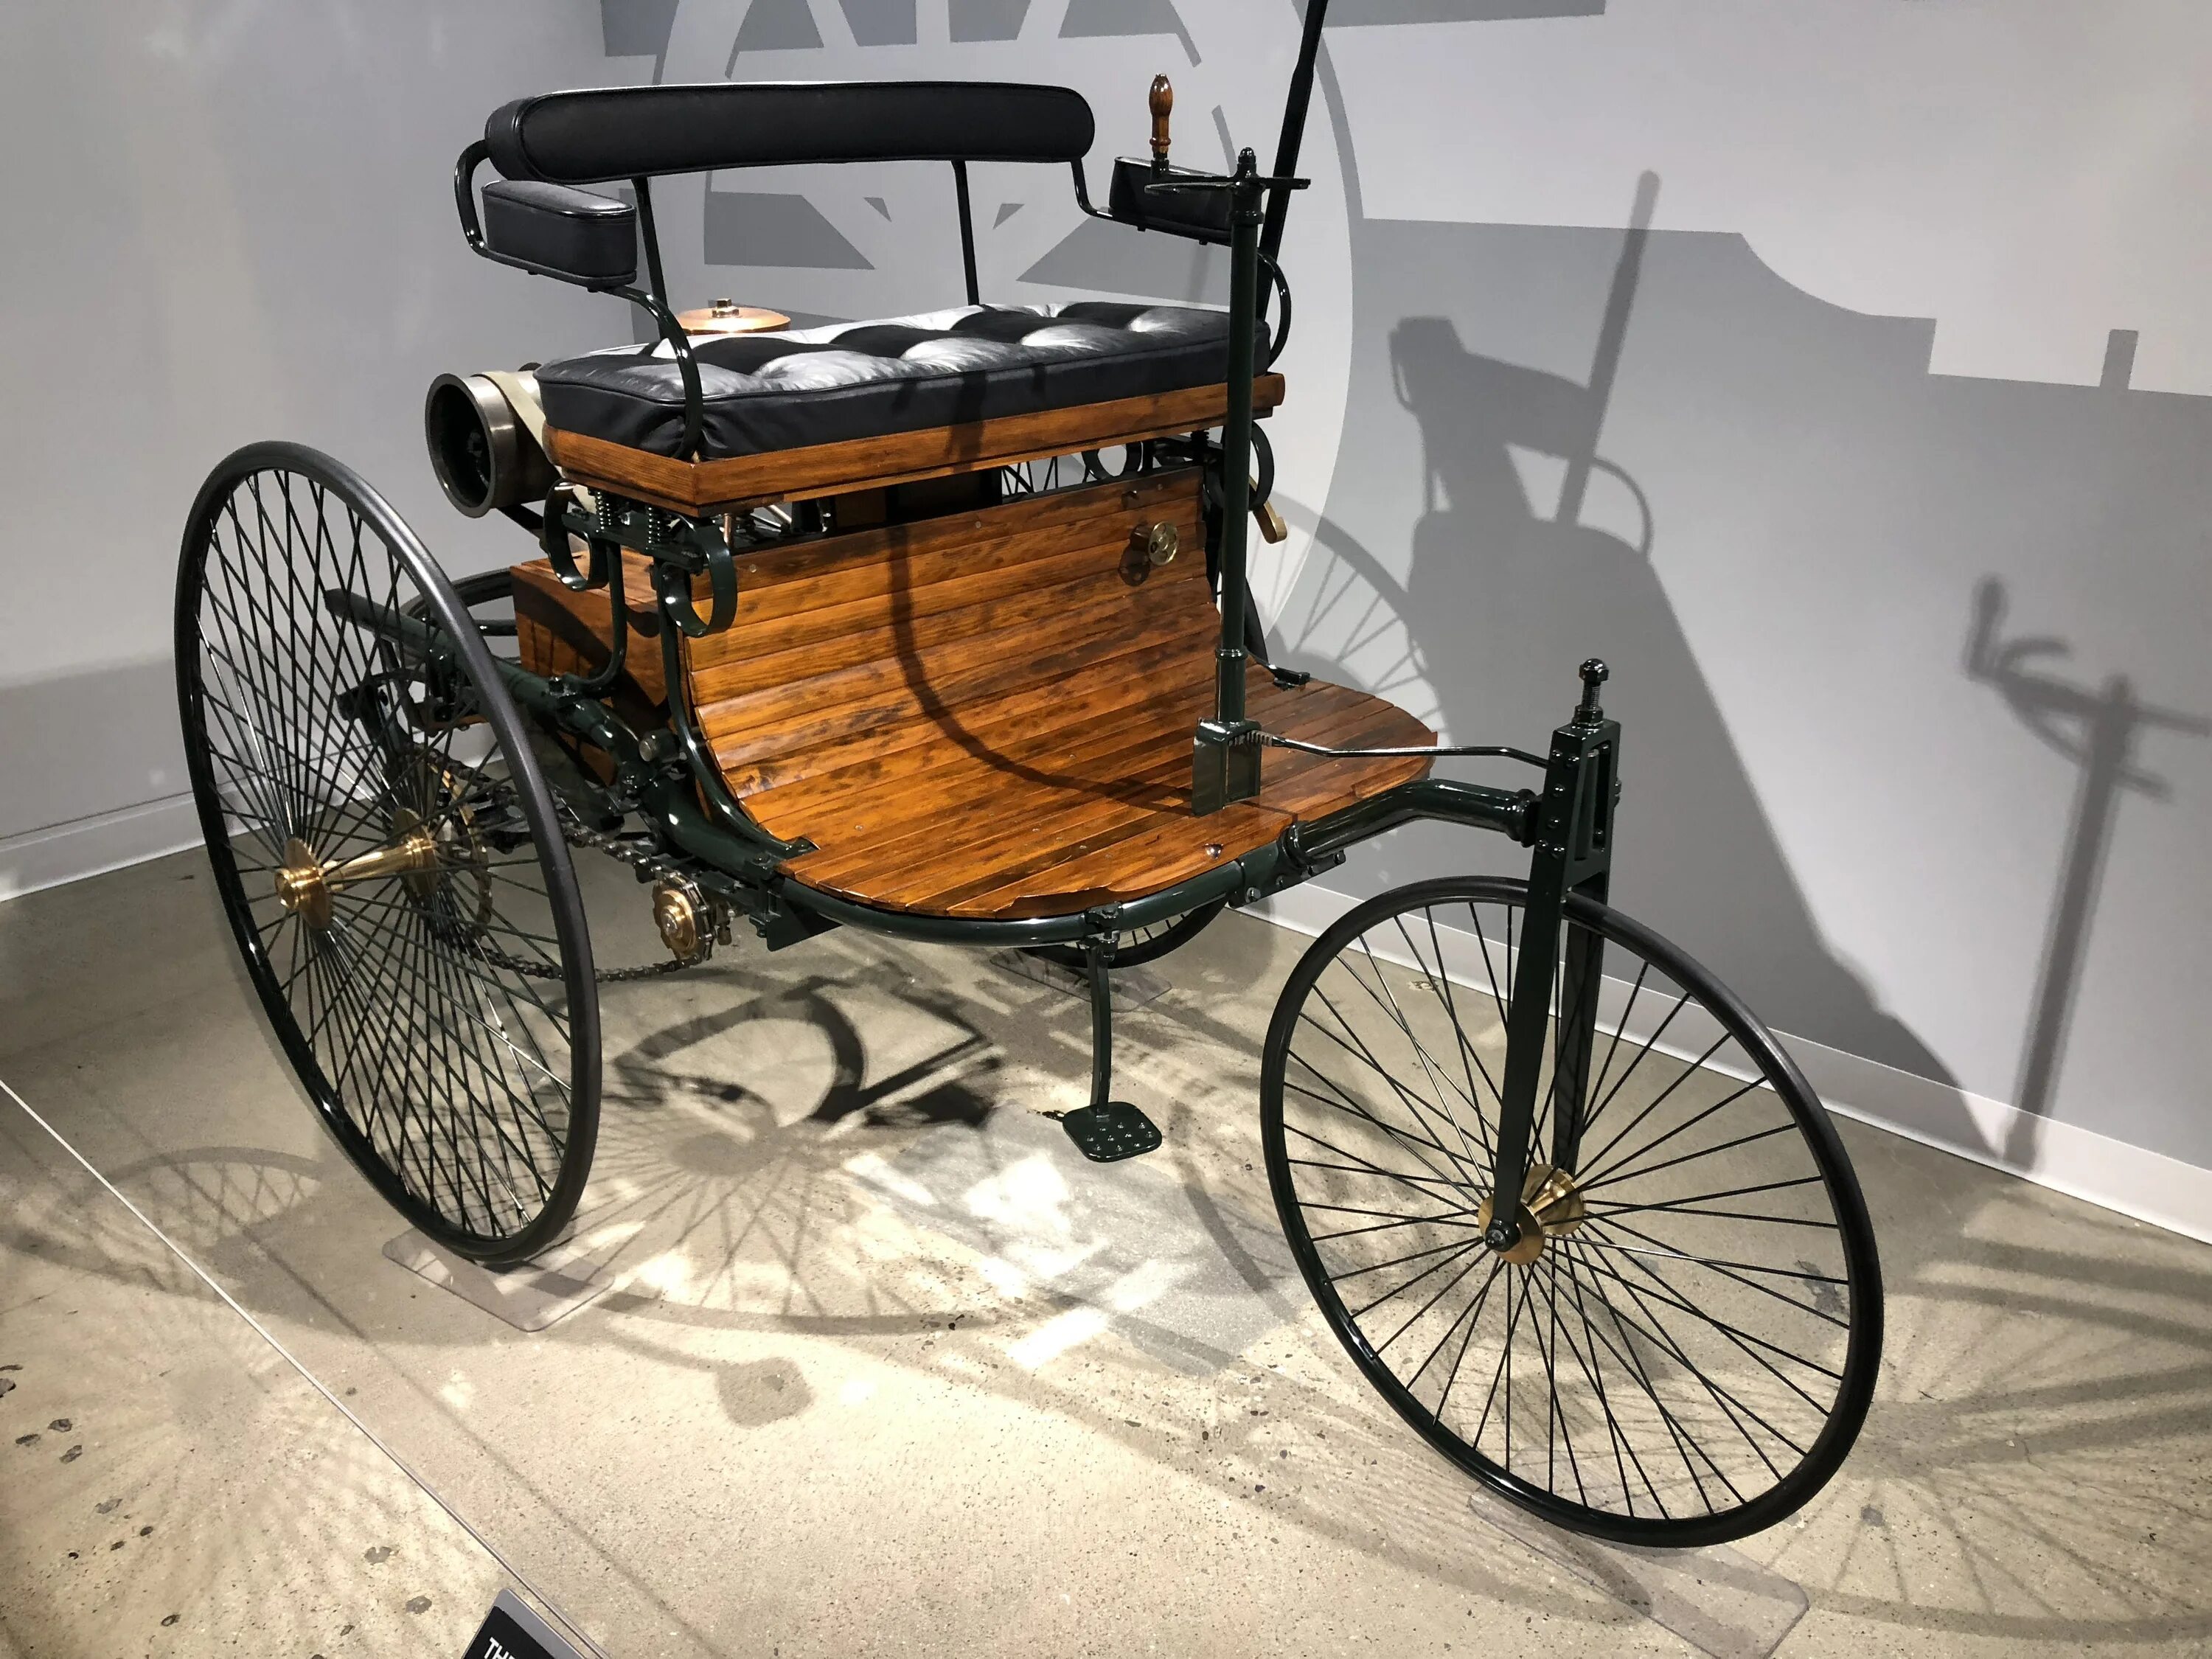 Первый автомобиль внутреннего. Benz Patent-Motorwagen 1886. Карлом Бенцем (Karl Benz) в 1886.